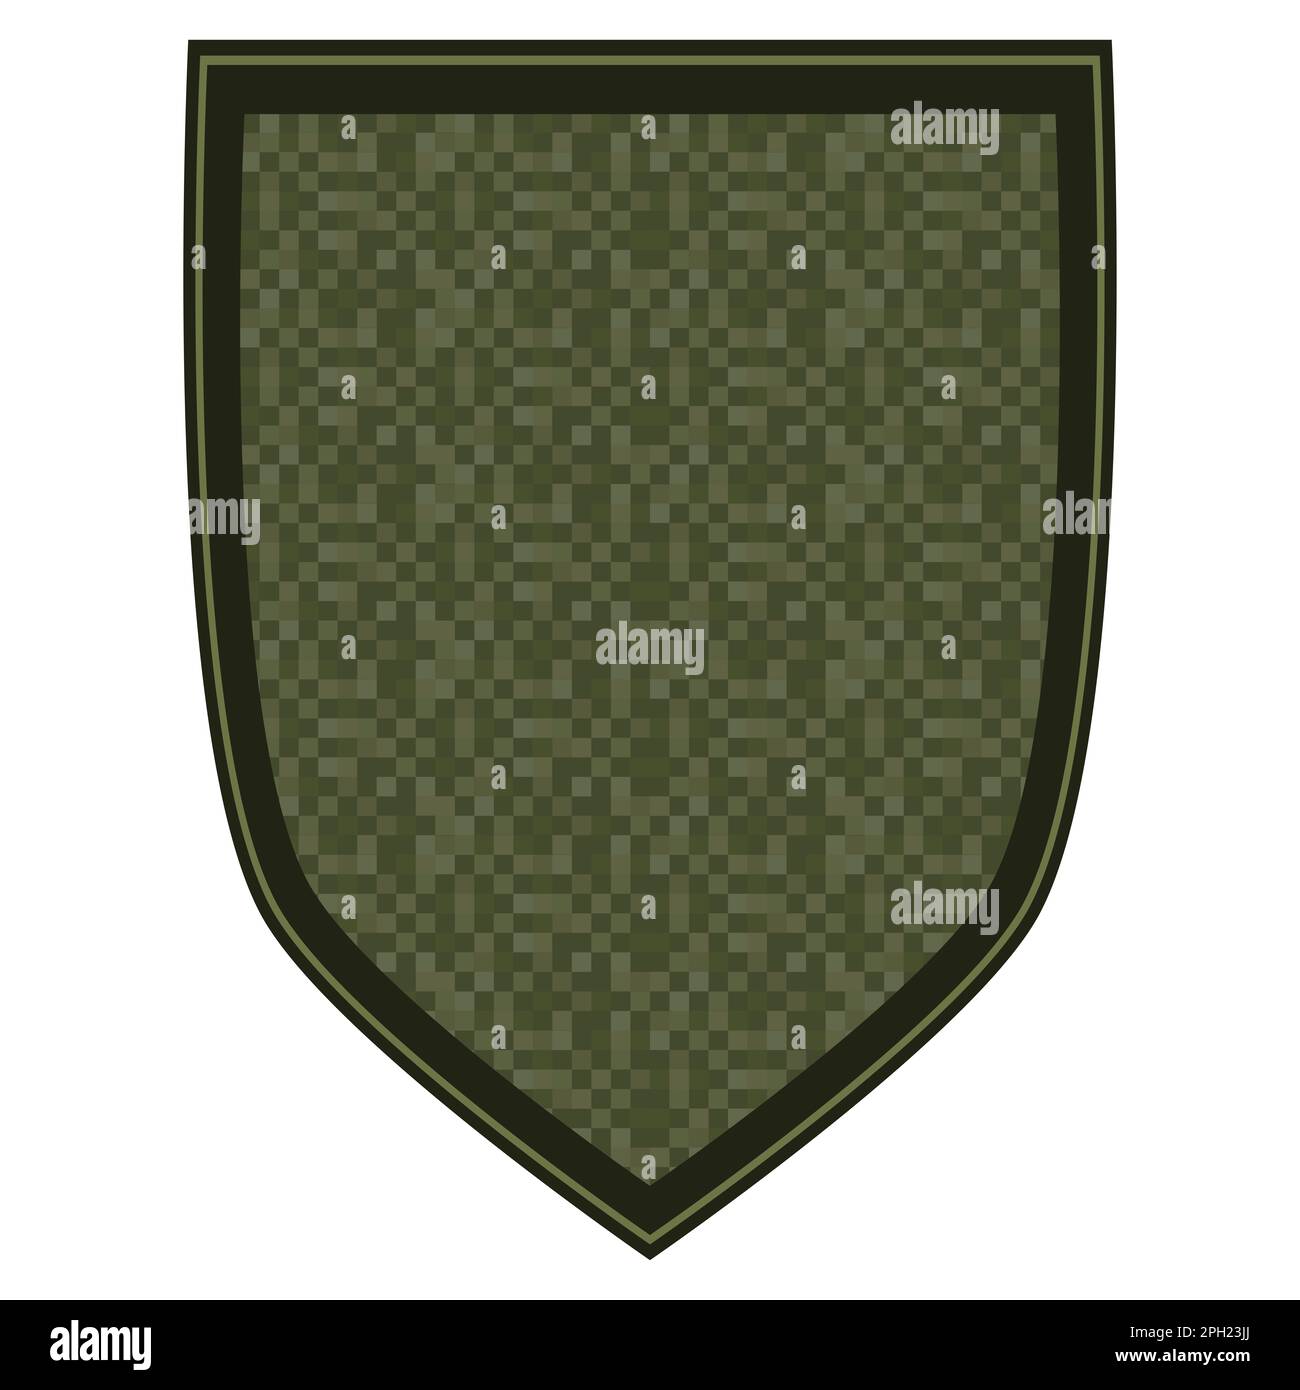 Das grüne Militär ist ein Schulterabzeichen. Armeesoldat Chevron. Einheitliches Schild mit grüner Pixeltarnung. Farbenfrohe Illustration isoliert auf weißem Hintergrund Stockfoto